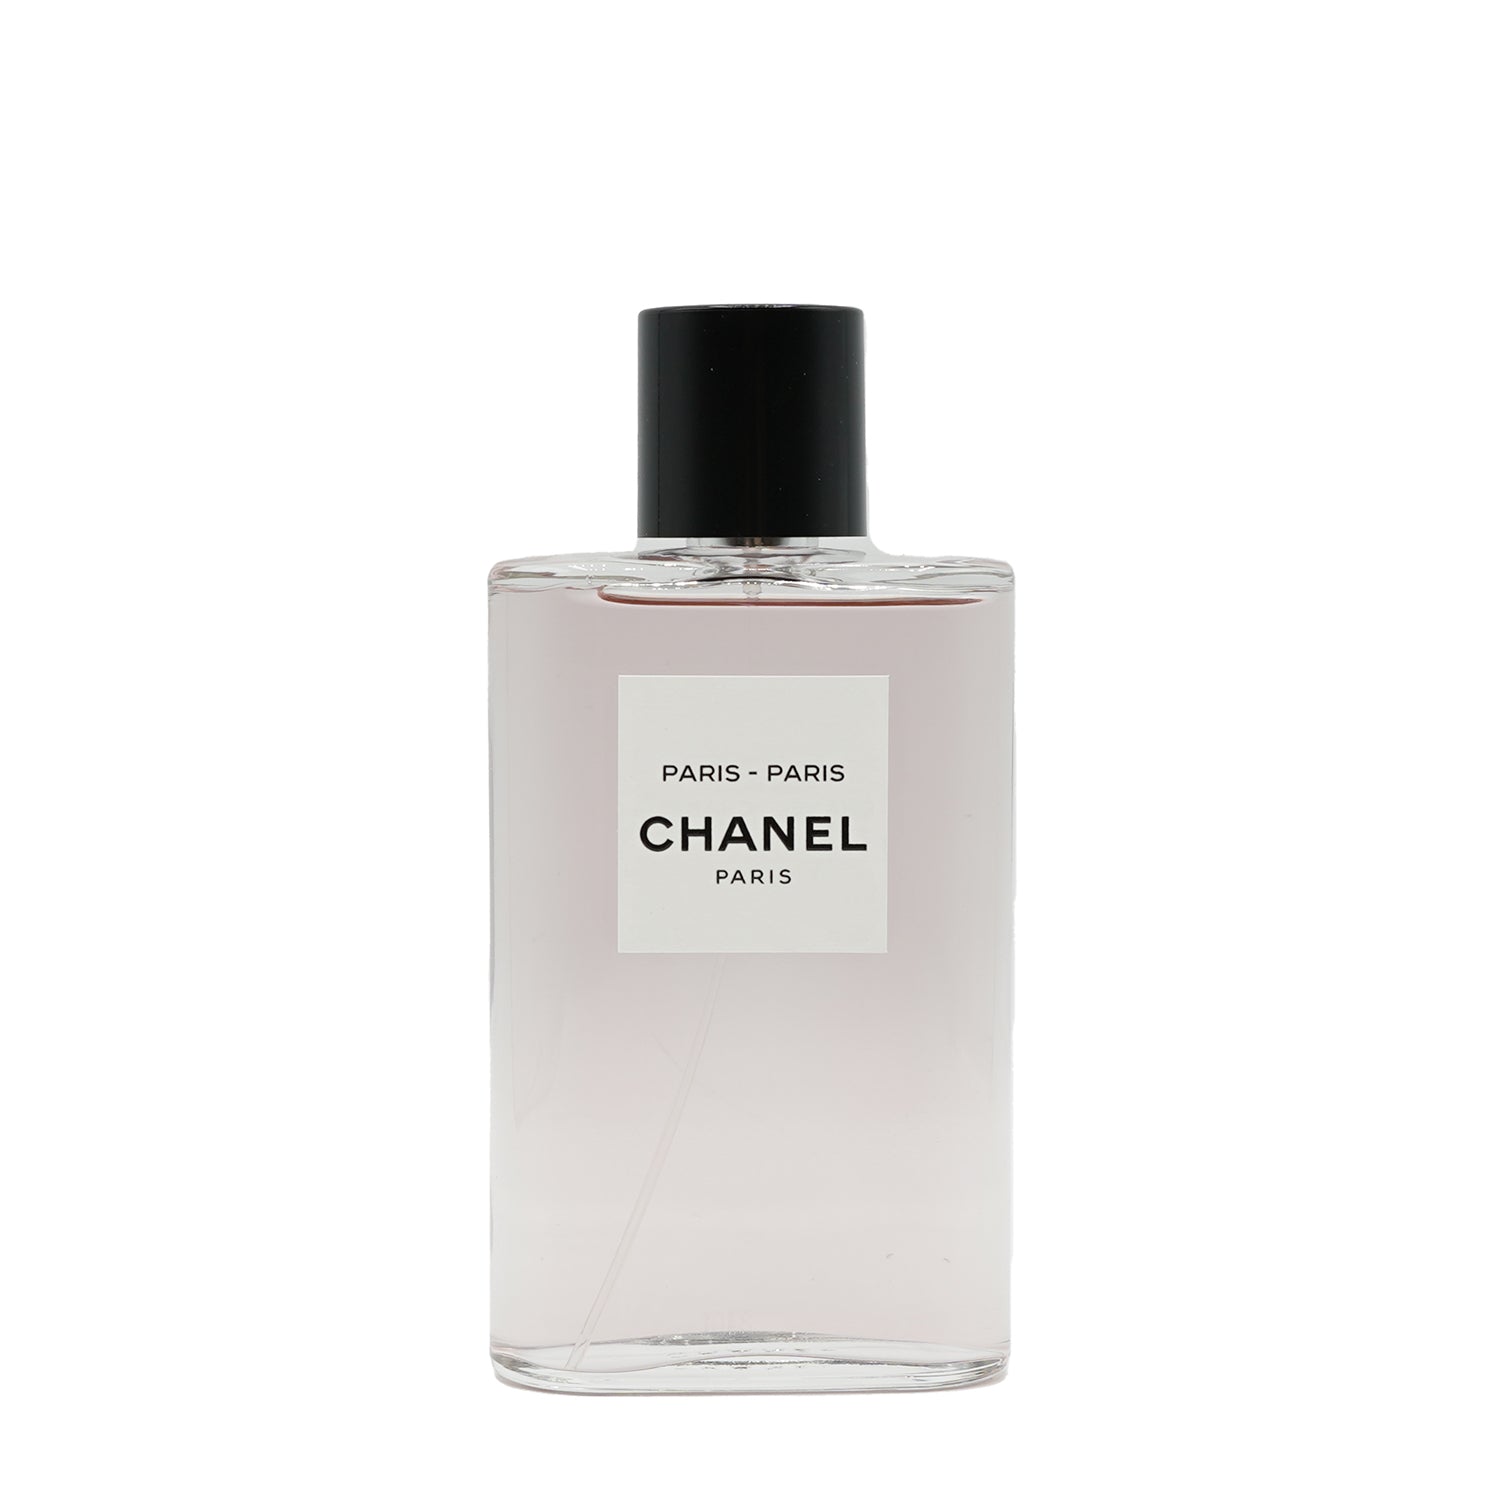 Chanel  Paris - Paris Abfüllung – Parfümproben